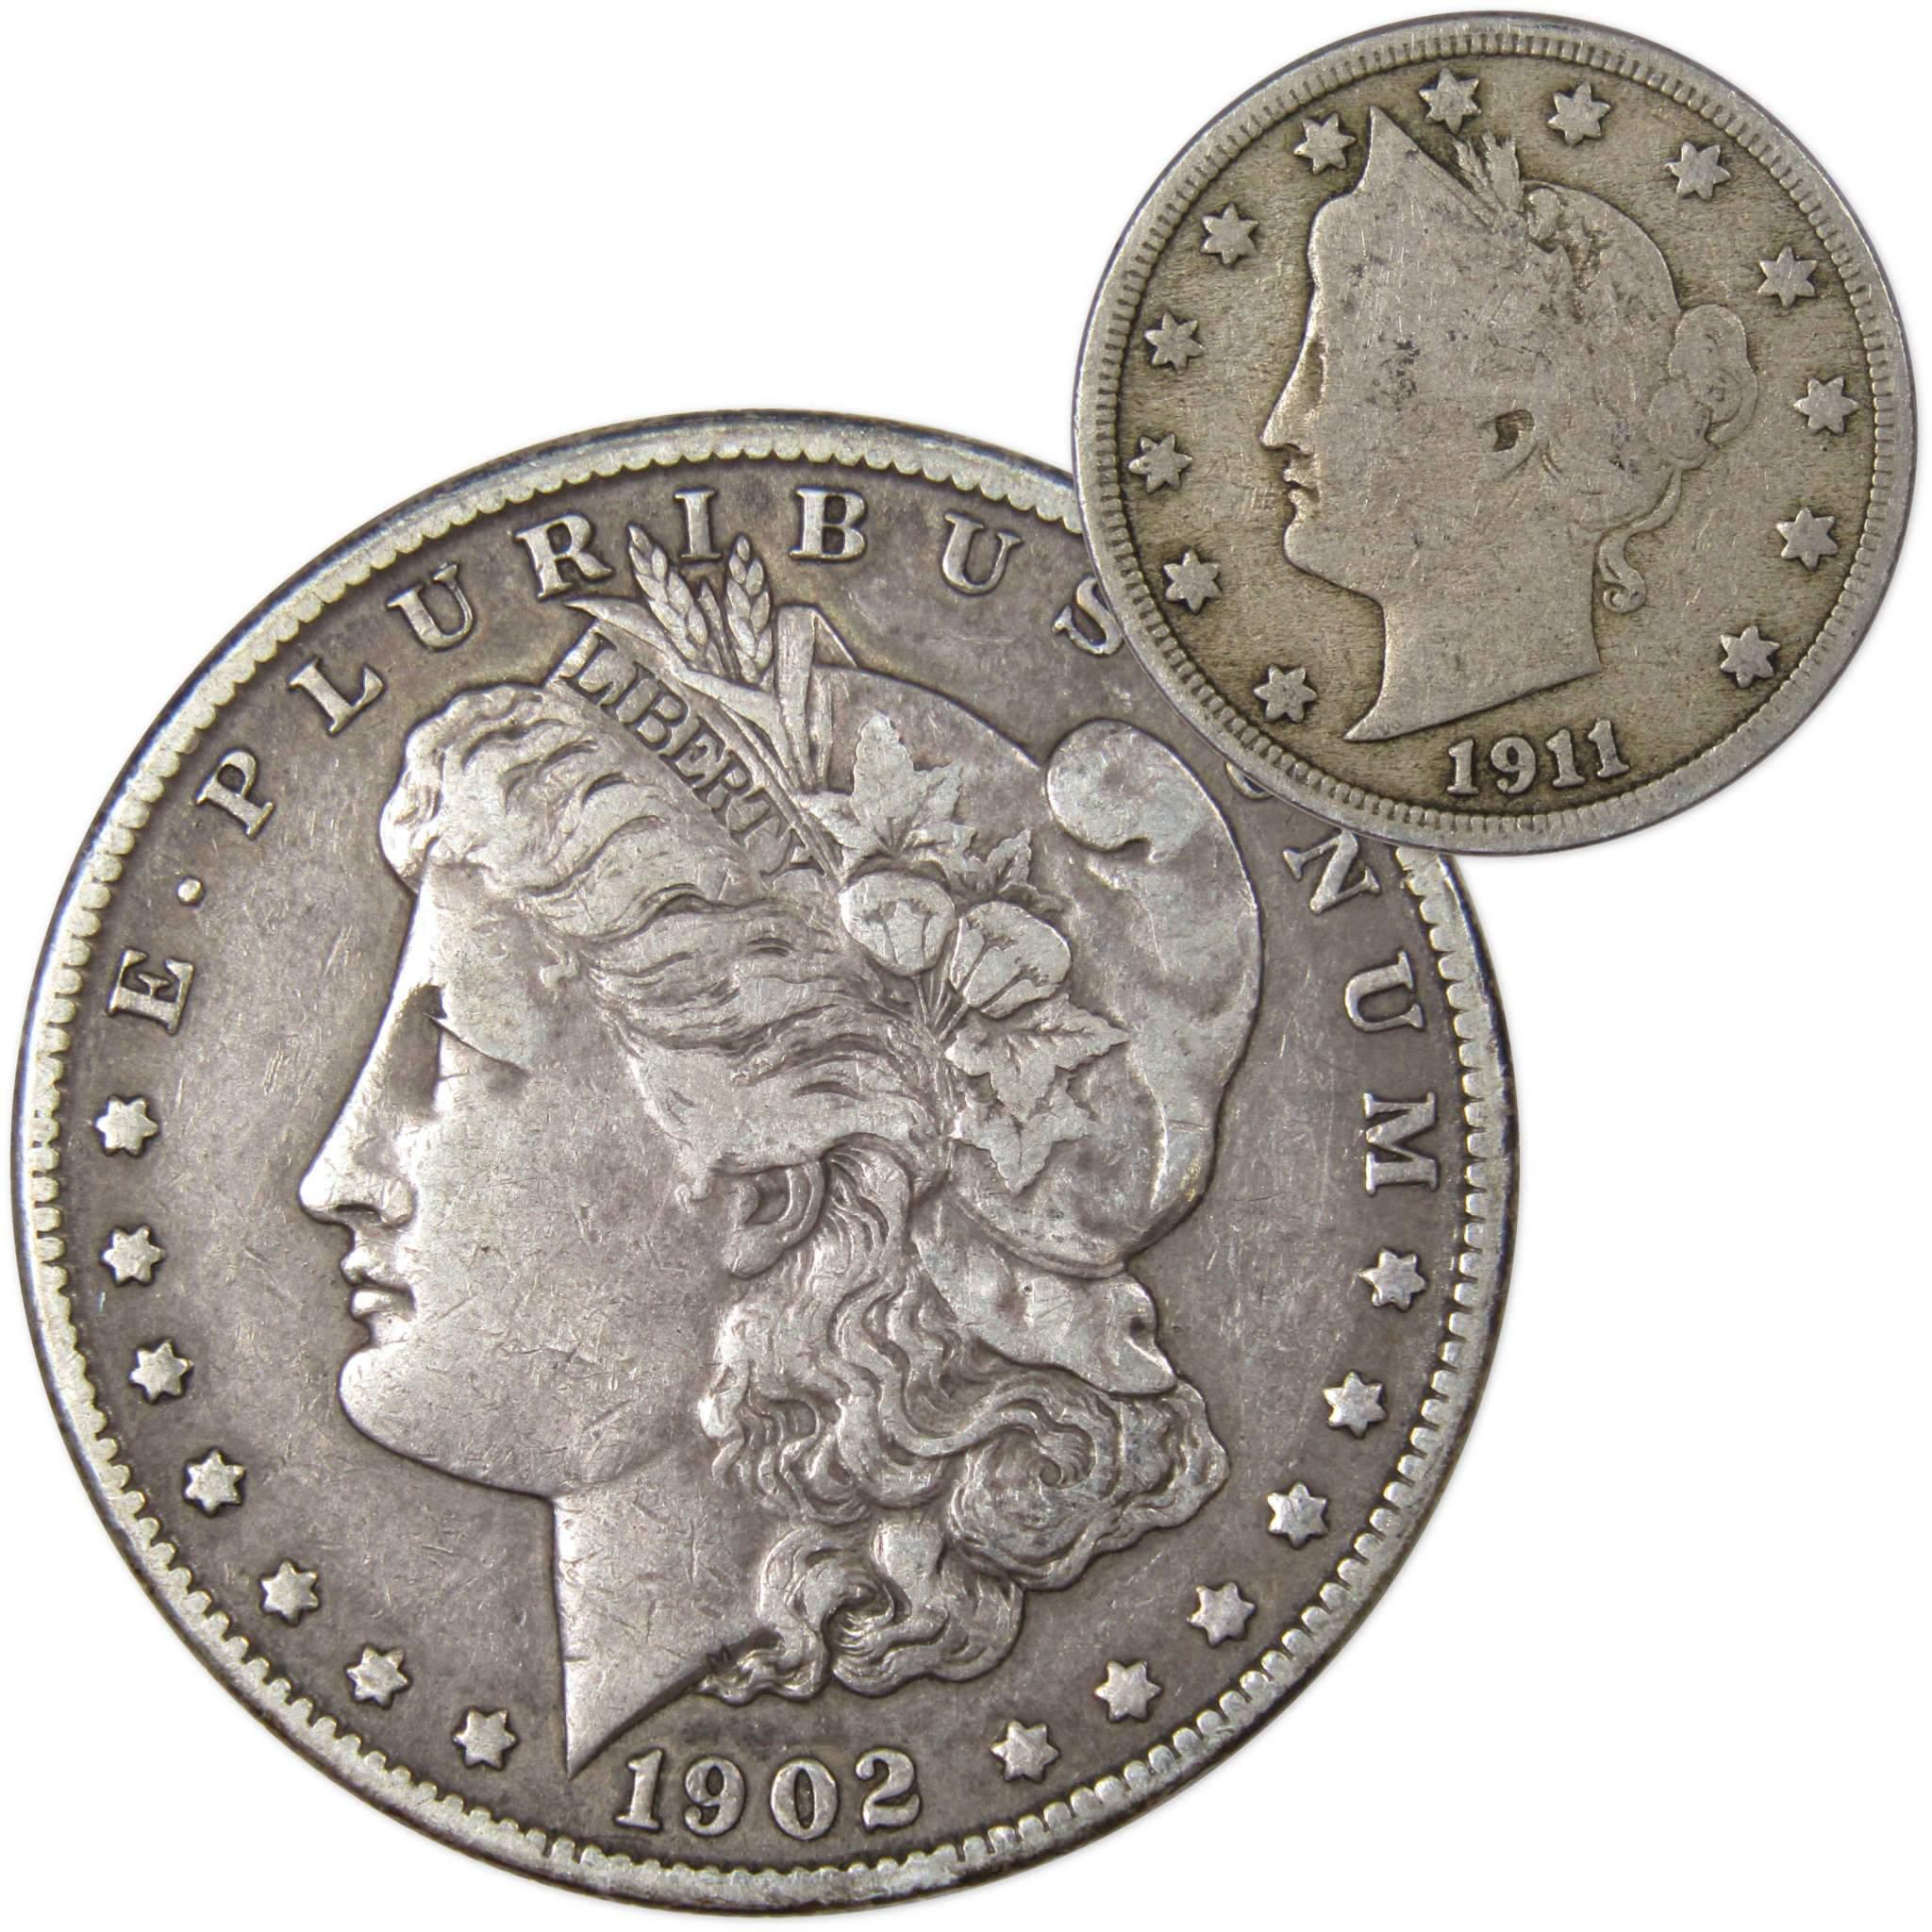 1902 O Morgan Dollar VF Very Fine 90% Silver with 1911 Liberty Nickel G Good - Morgan coin - Morgan silver dollar - Morgan silver dollar for sale - Profile Coins &amp; Collectibles